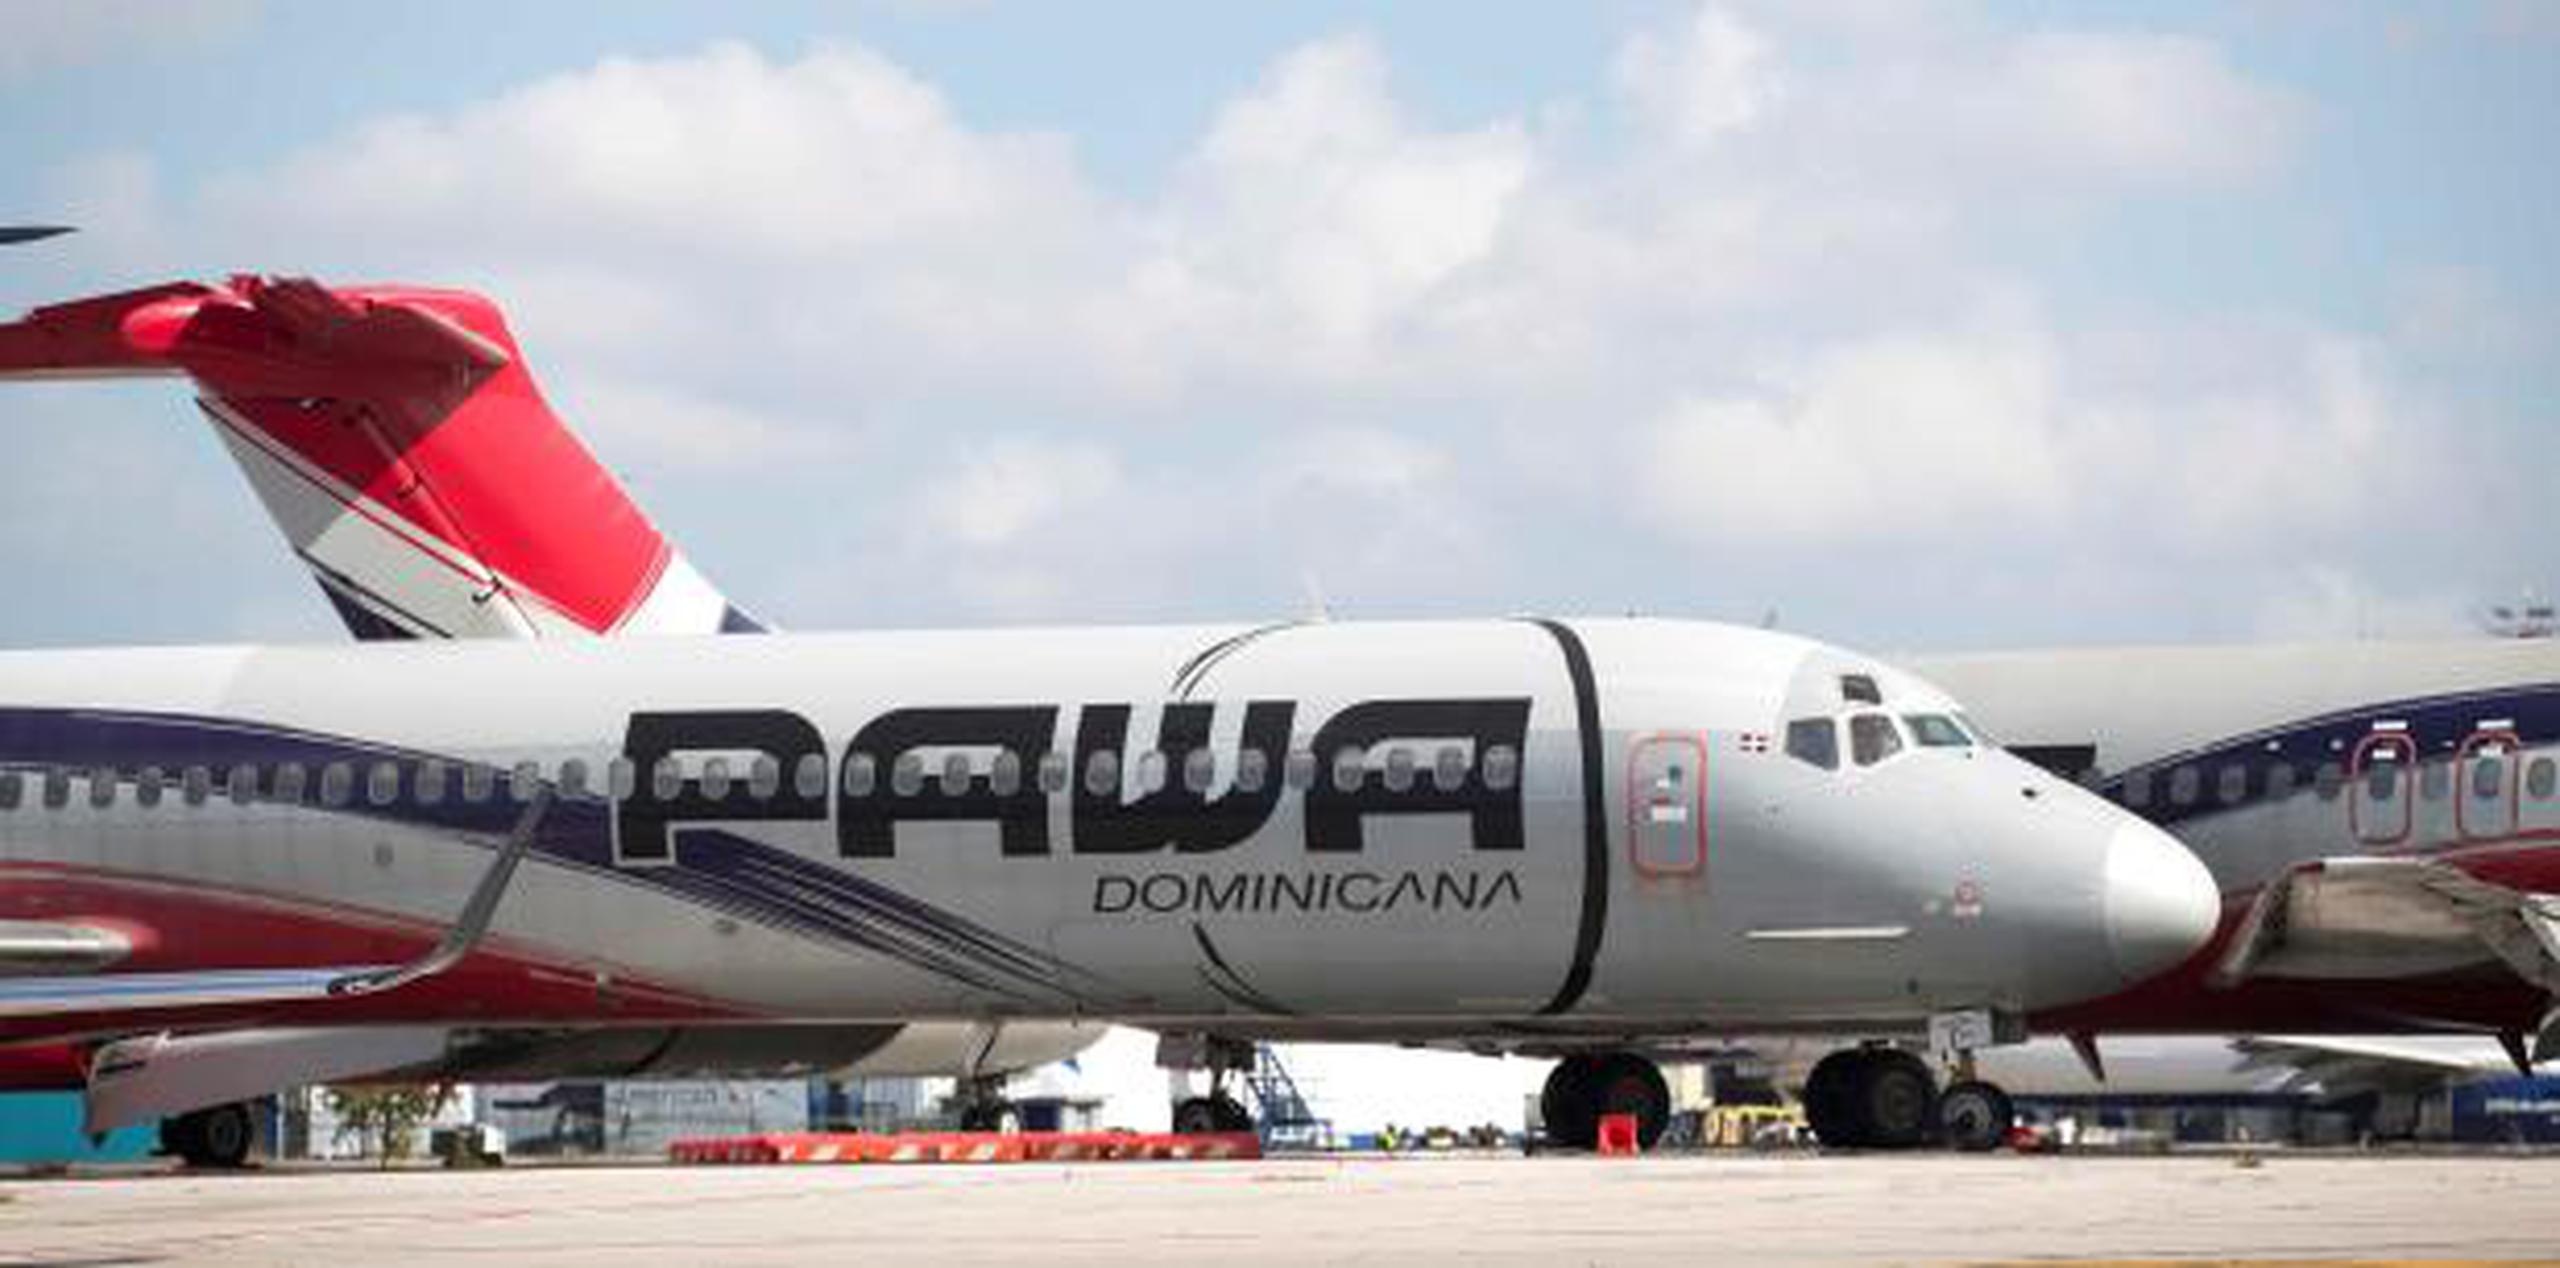 Pawa fue suspendida por presunto incumplimiento de pago de las tasas y servicios aeronáuticos y aeroportuarios. (EFE)